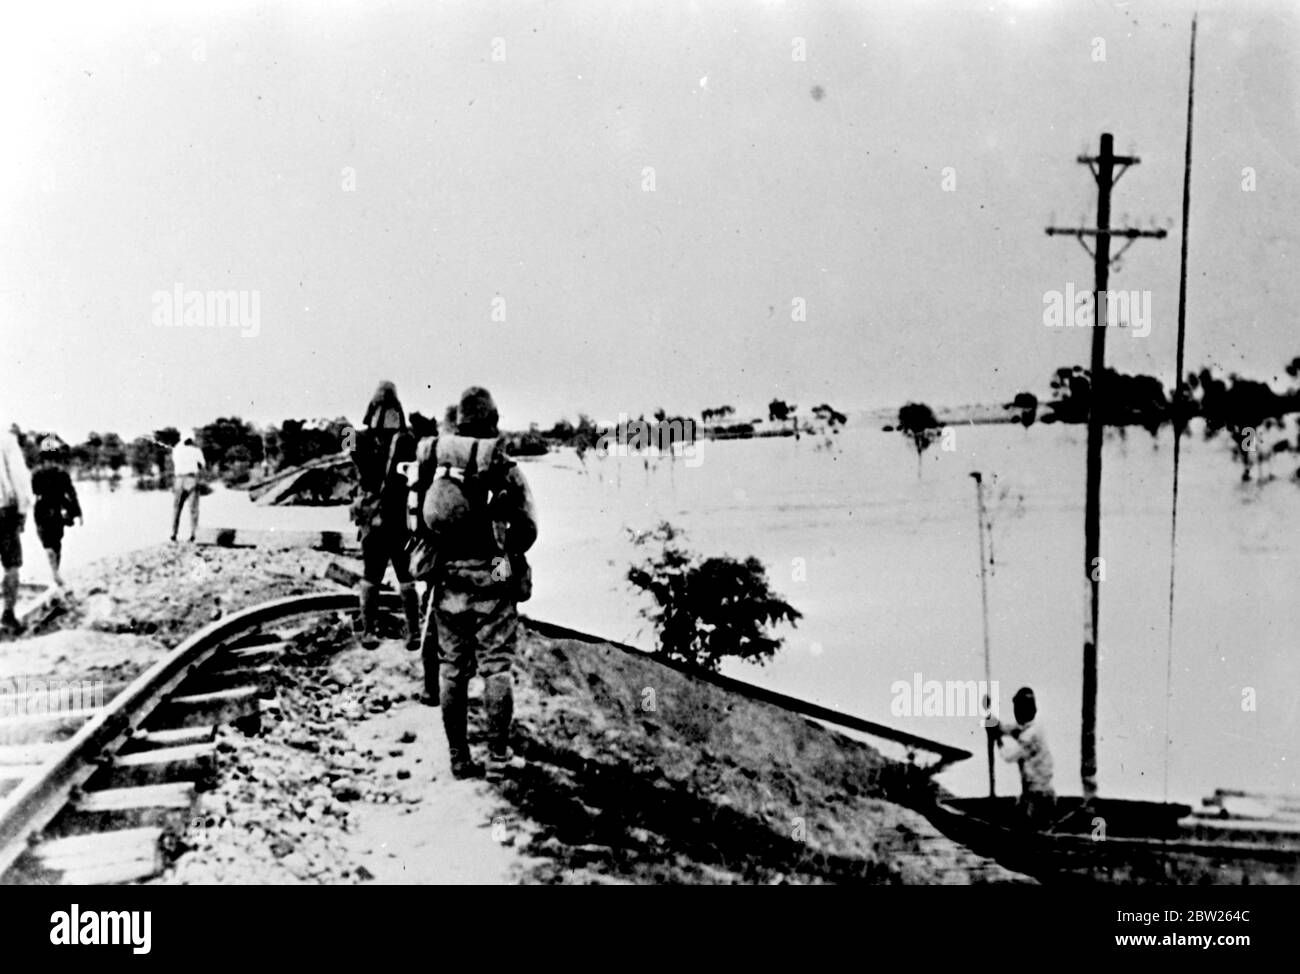 Gelber Fluss Überschwemmungen Schäden Lunghai Railway. Die Lunghai-Bahn, die das Zentrum der Kämpfe zwischen chinesischen und japanischen Kräften war, wurde durch die Fluten des Gelben Flusses beschädigt, die weite Gebiete überschwemmten und China Tod und Zerstörung brachten, leidet bereits Millionen. Foto zeigt, Soldaten sehen Schäden durch die Fluten des Gelben Flusses an der Lunghai Eisenbahn in der Nähe von Kaifeng. 13 Juli 1938 Stockfoto